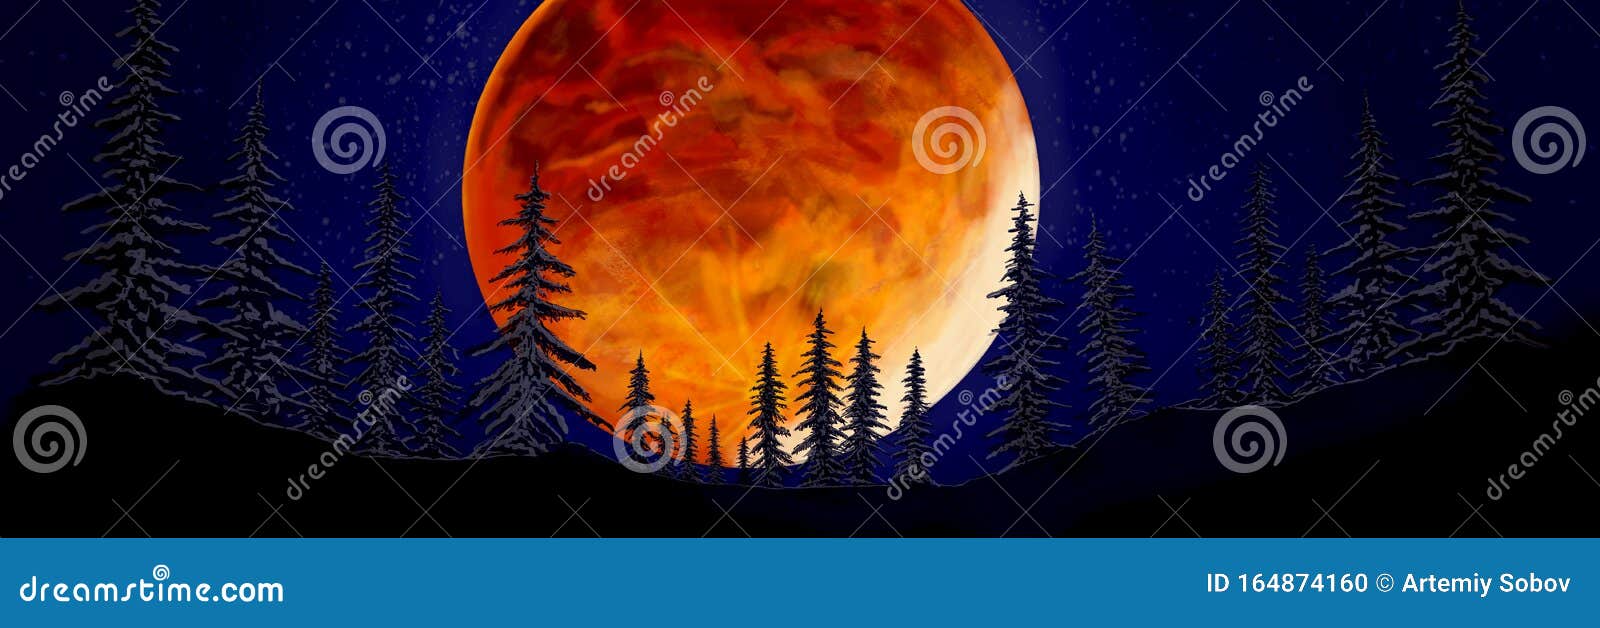 在森林里 一个夜晚 在树上 一个巨大的红月 一个神秘的月亮万圣节壁纸库存照片 图片包括有万圣节壁纸 在森林里 一个夜晚 在树上 一个巨大的红月 一个 神秘的月亮